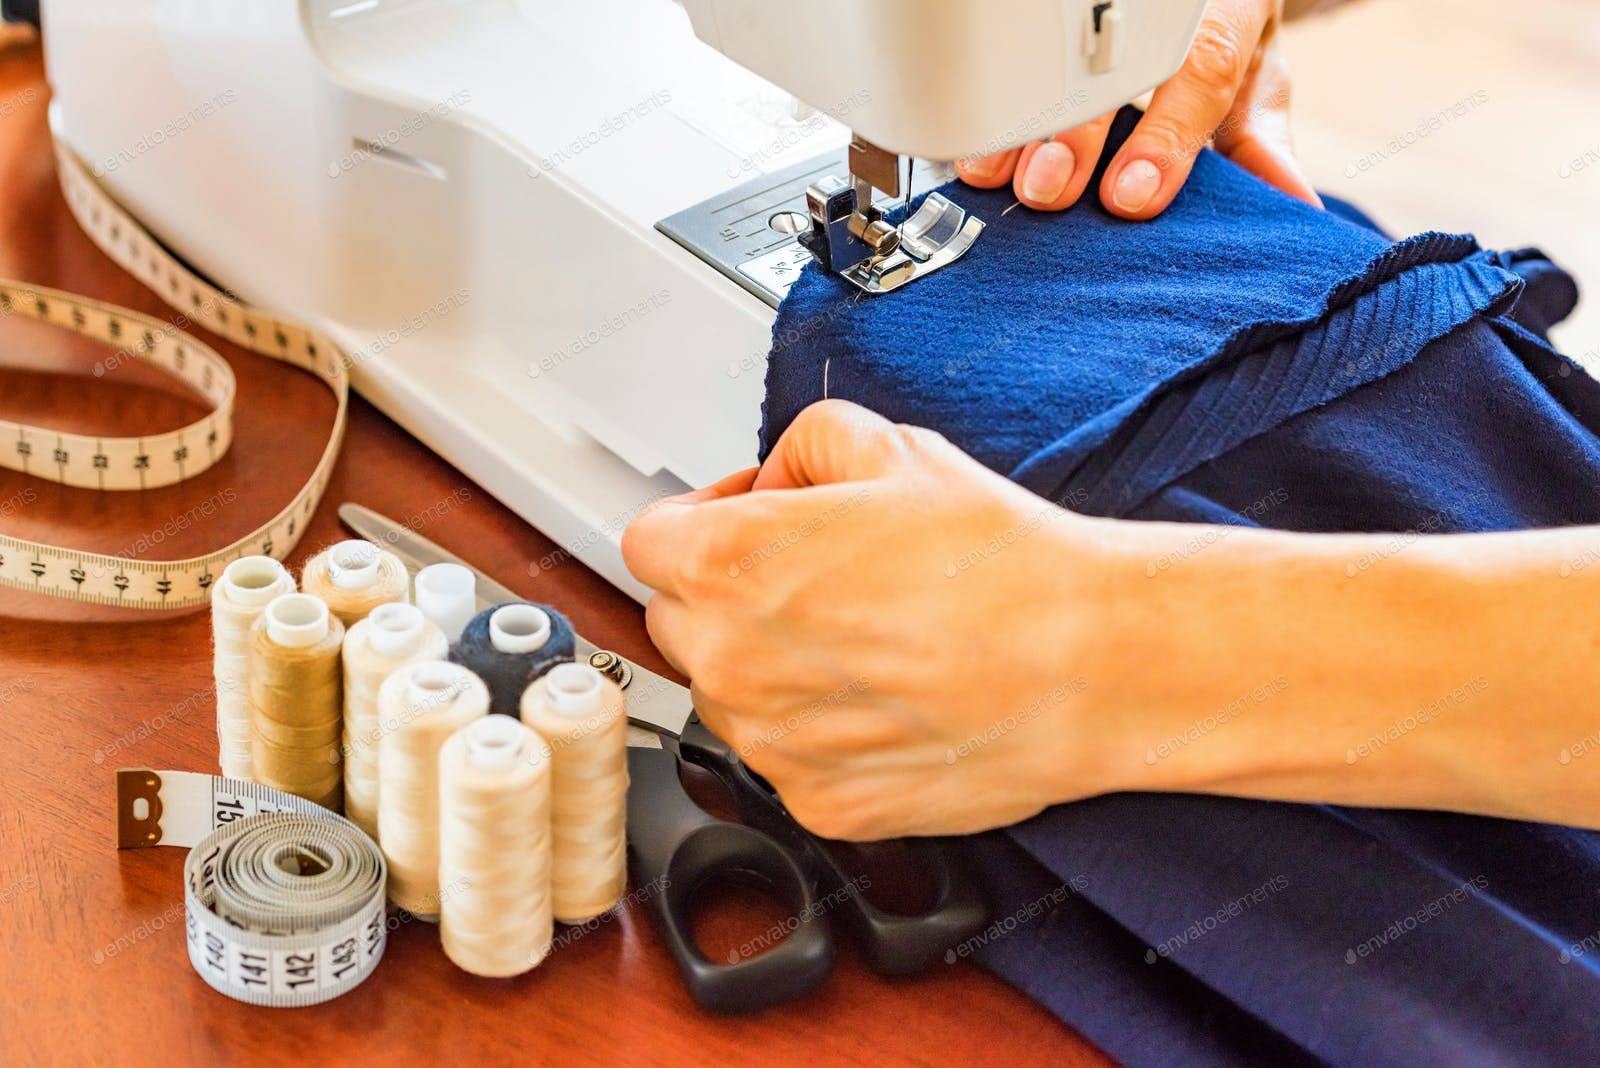 Швейный бизнес для начинающих: что лучше шить?